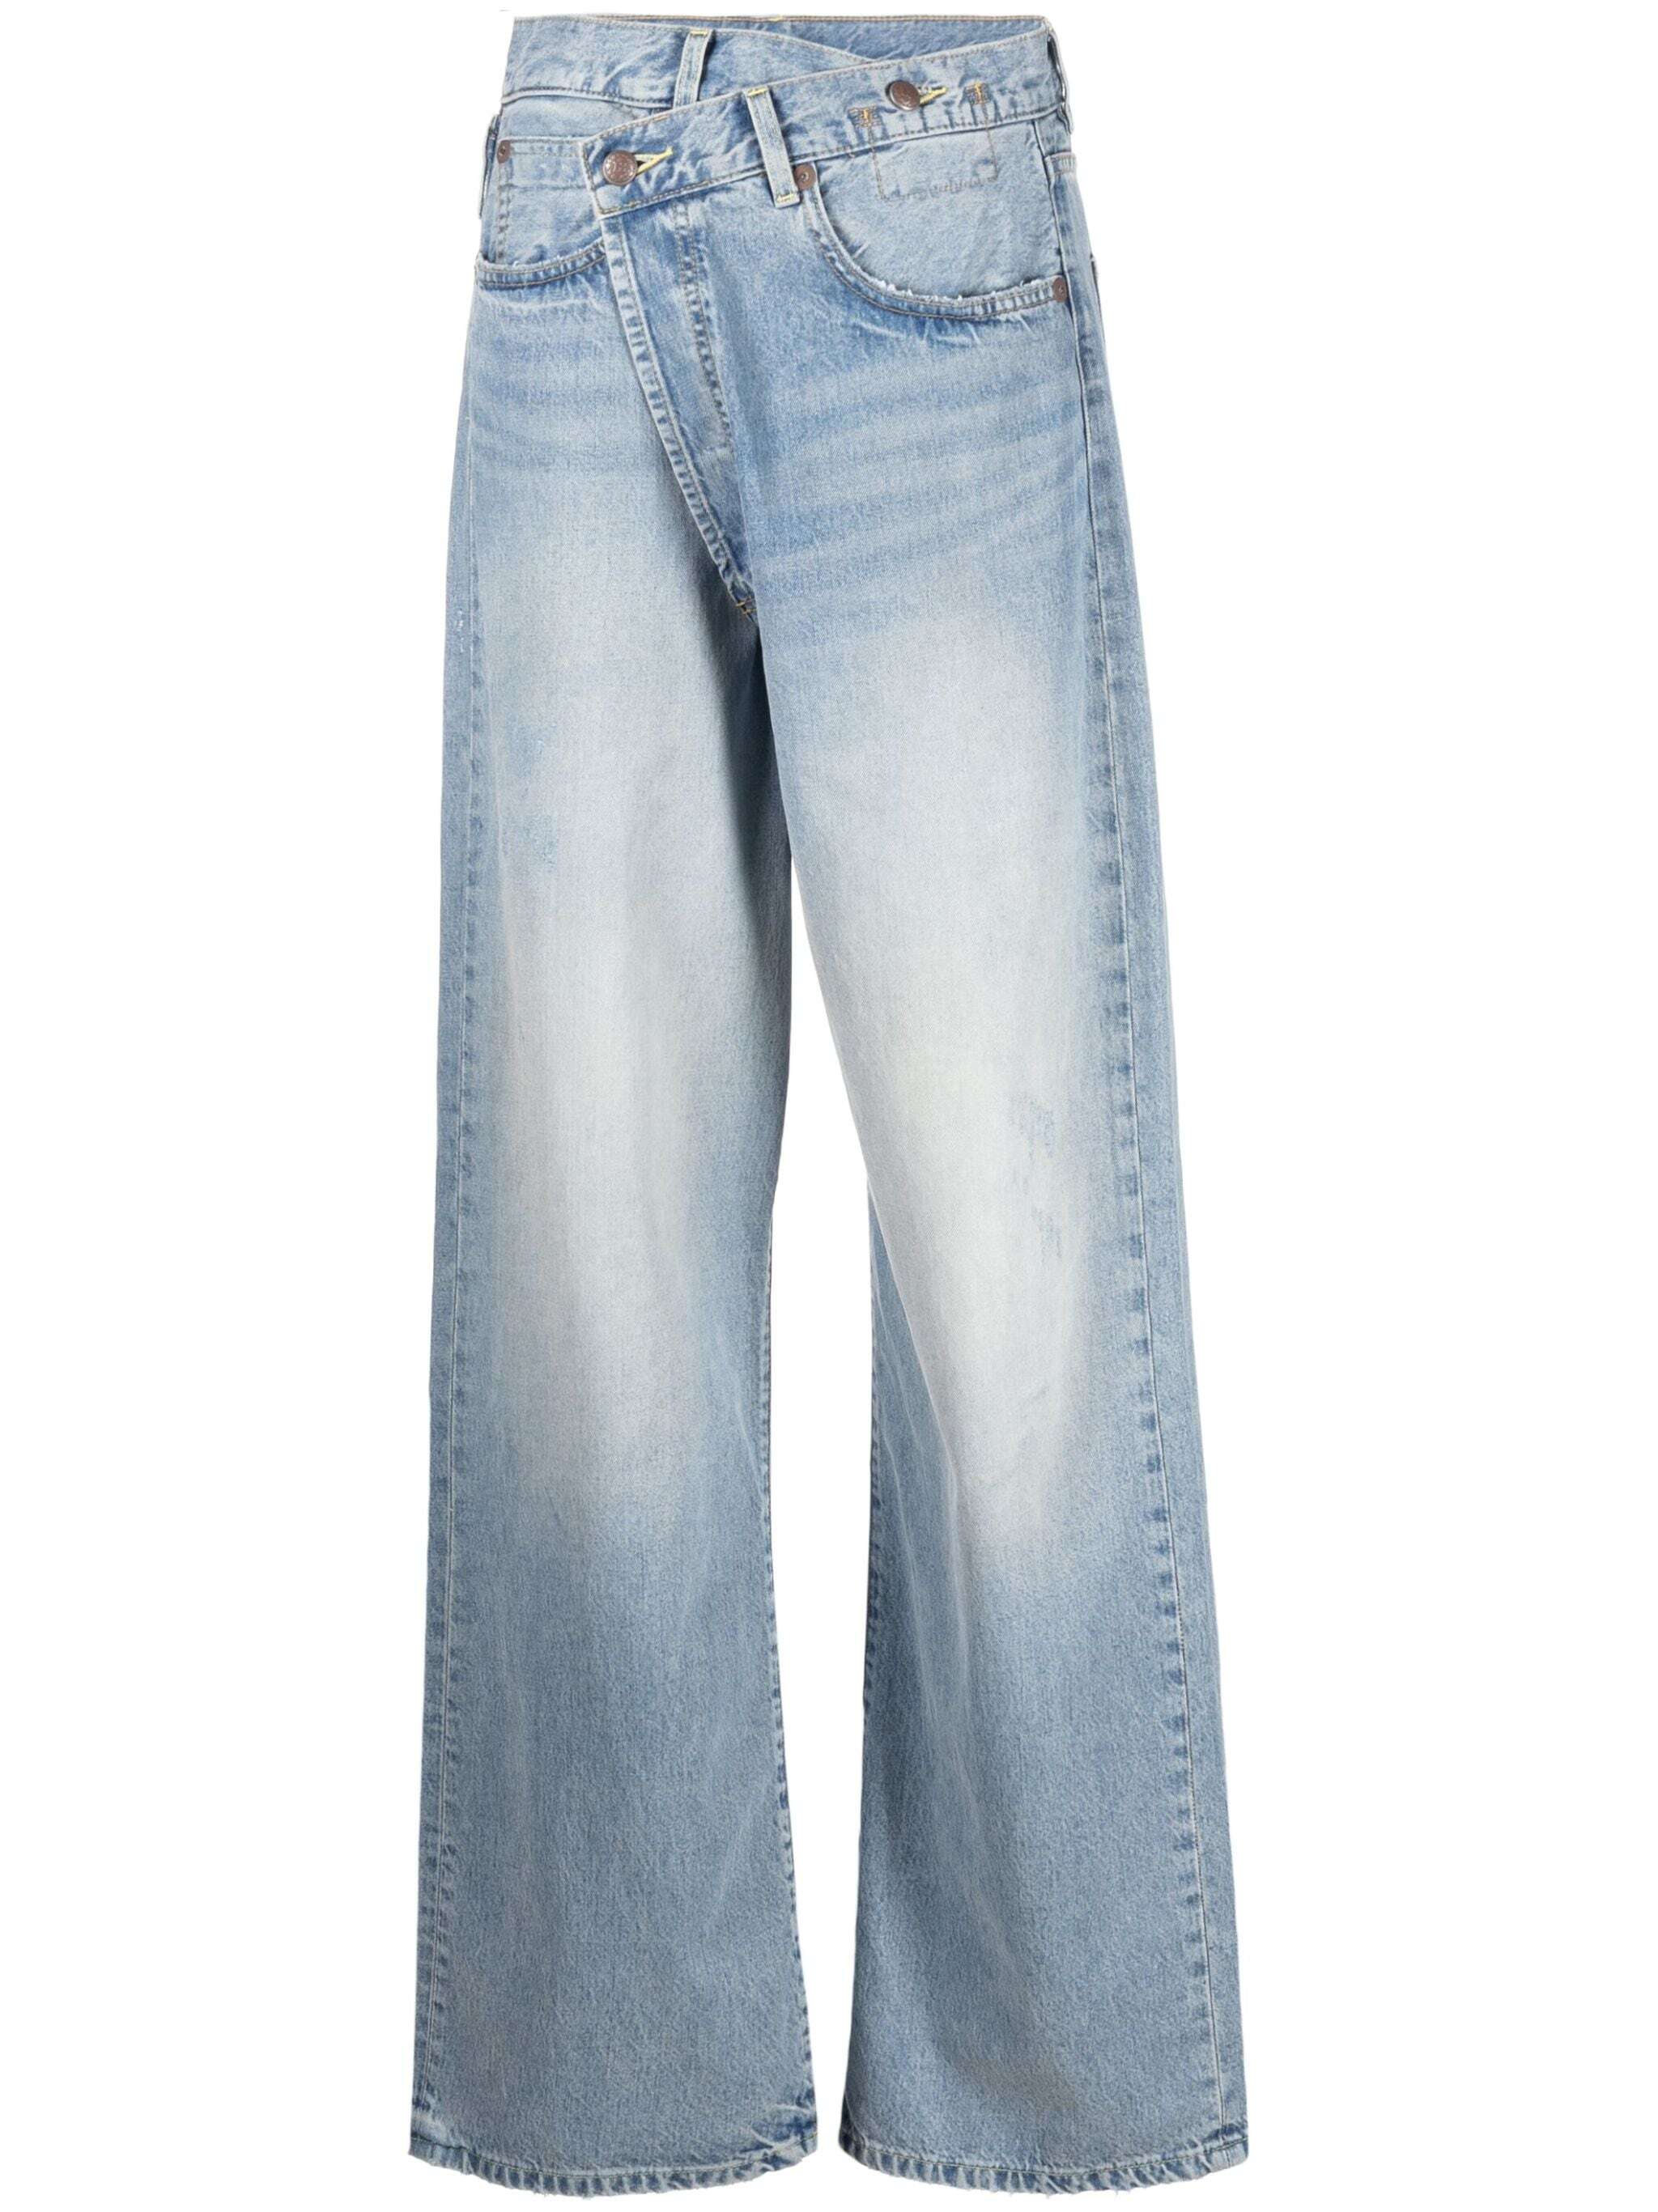 Crossover Jeans mit weitem Bein